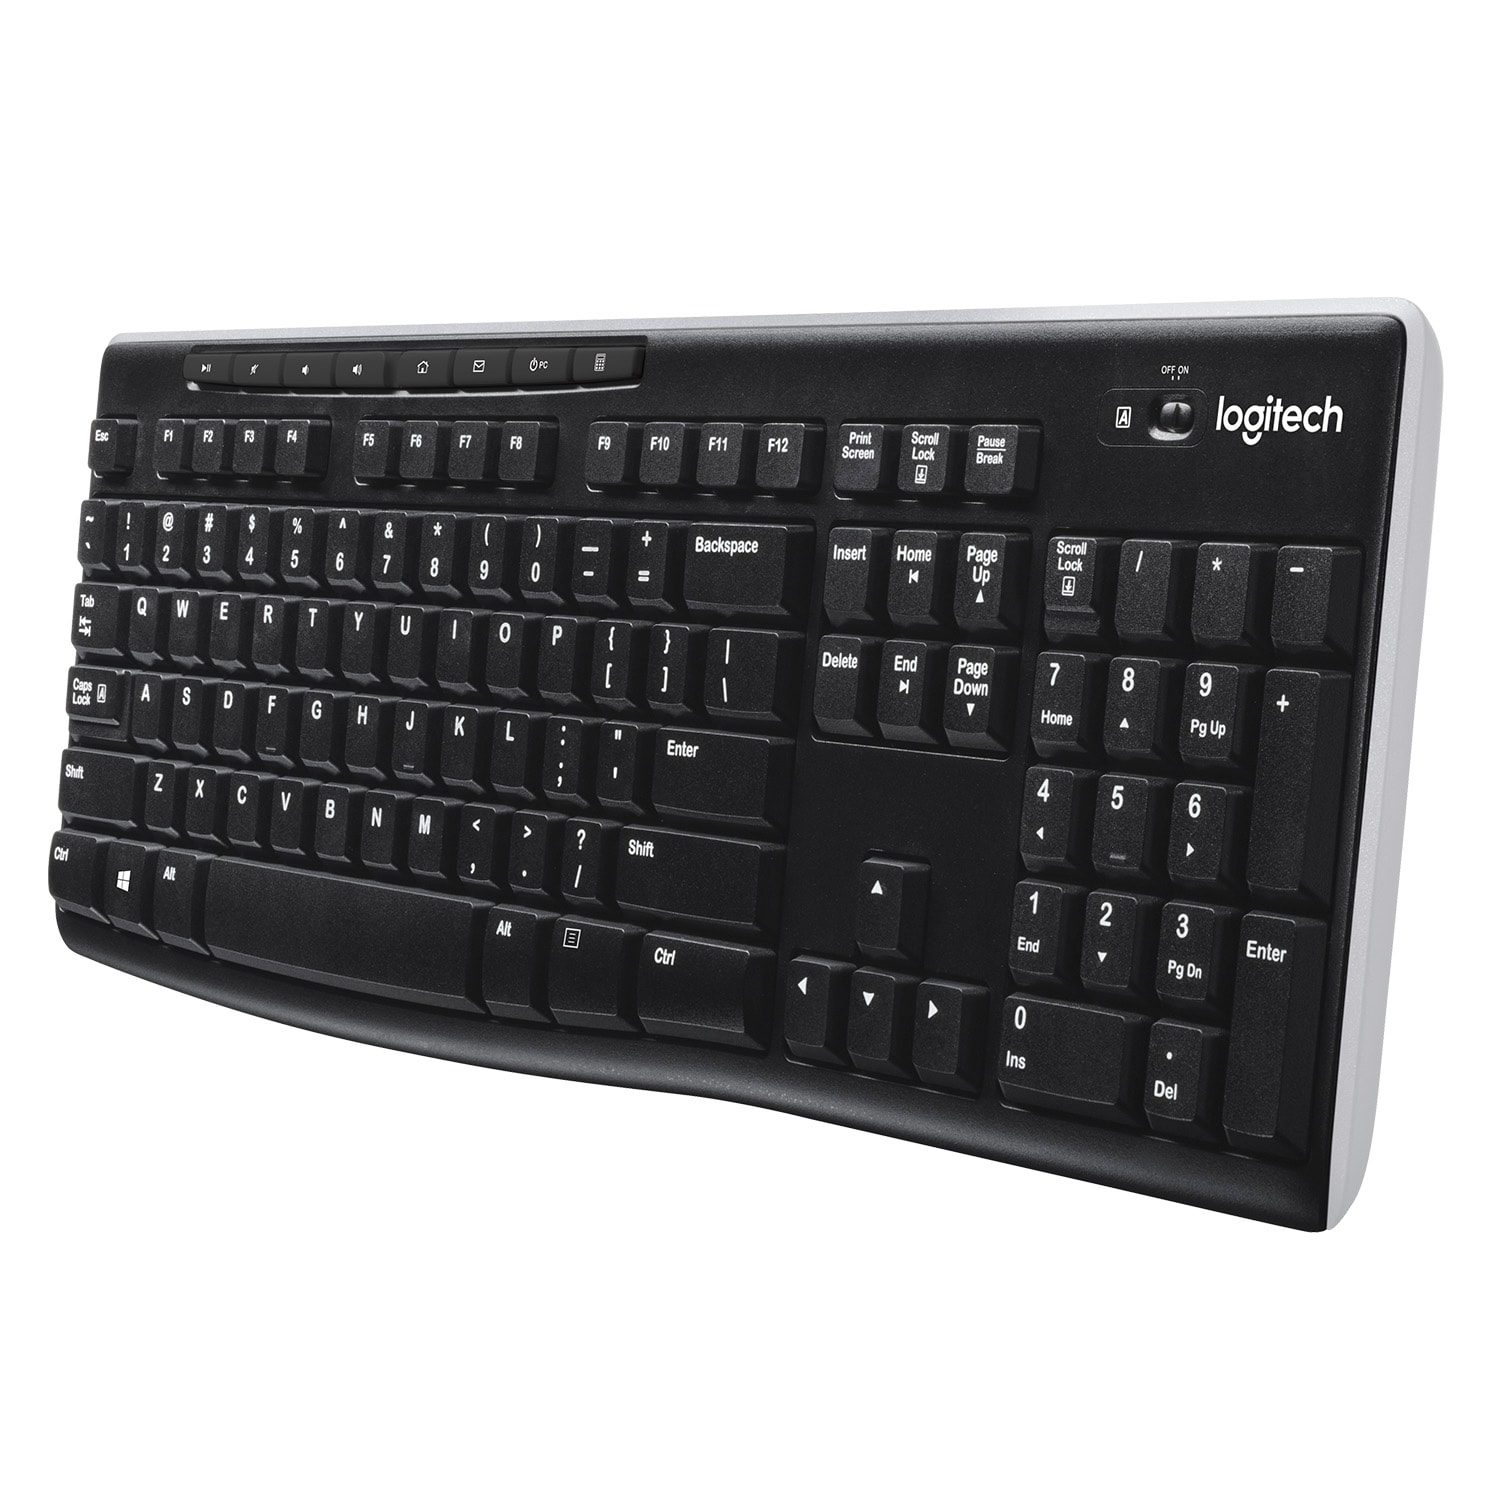 Logitech K270 trådlöst tangentbord - Elgiganten